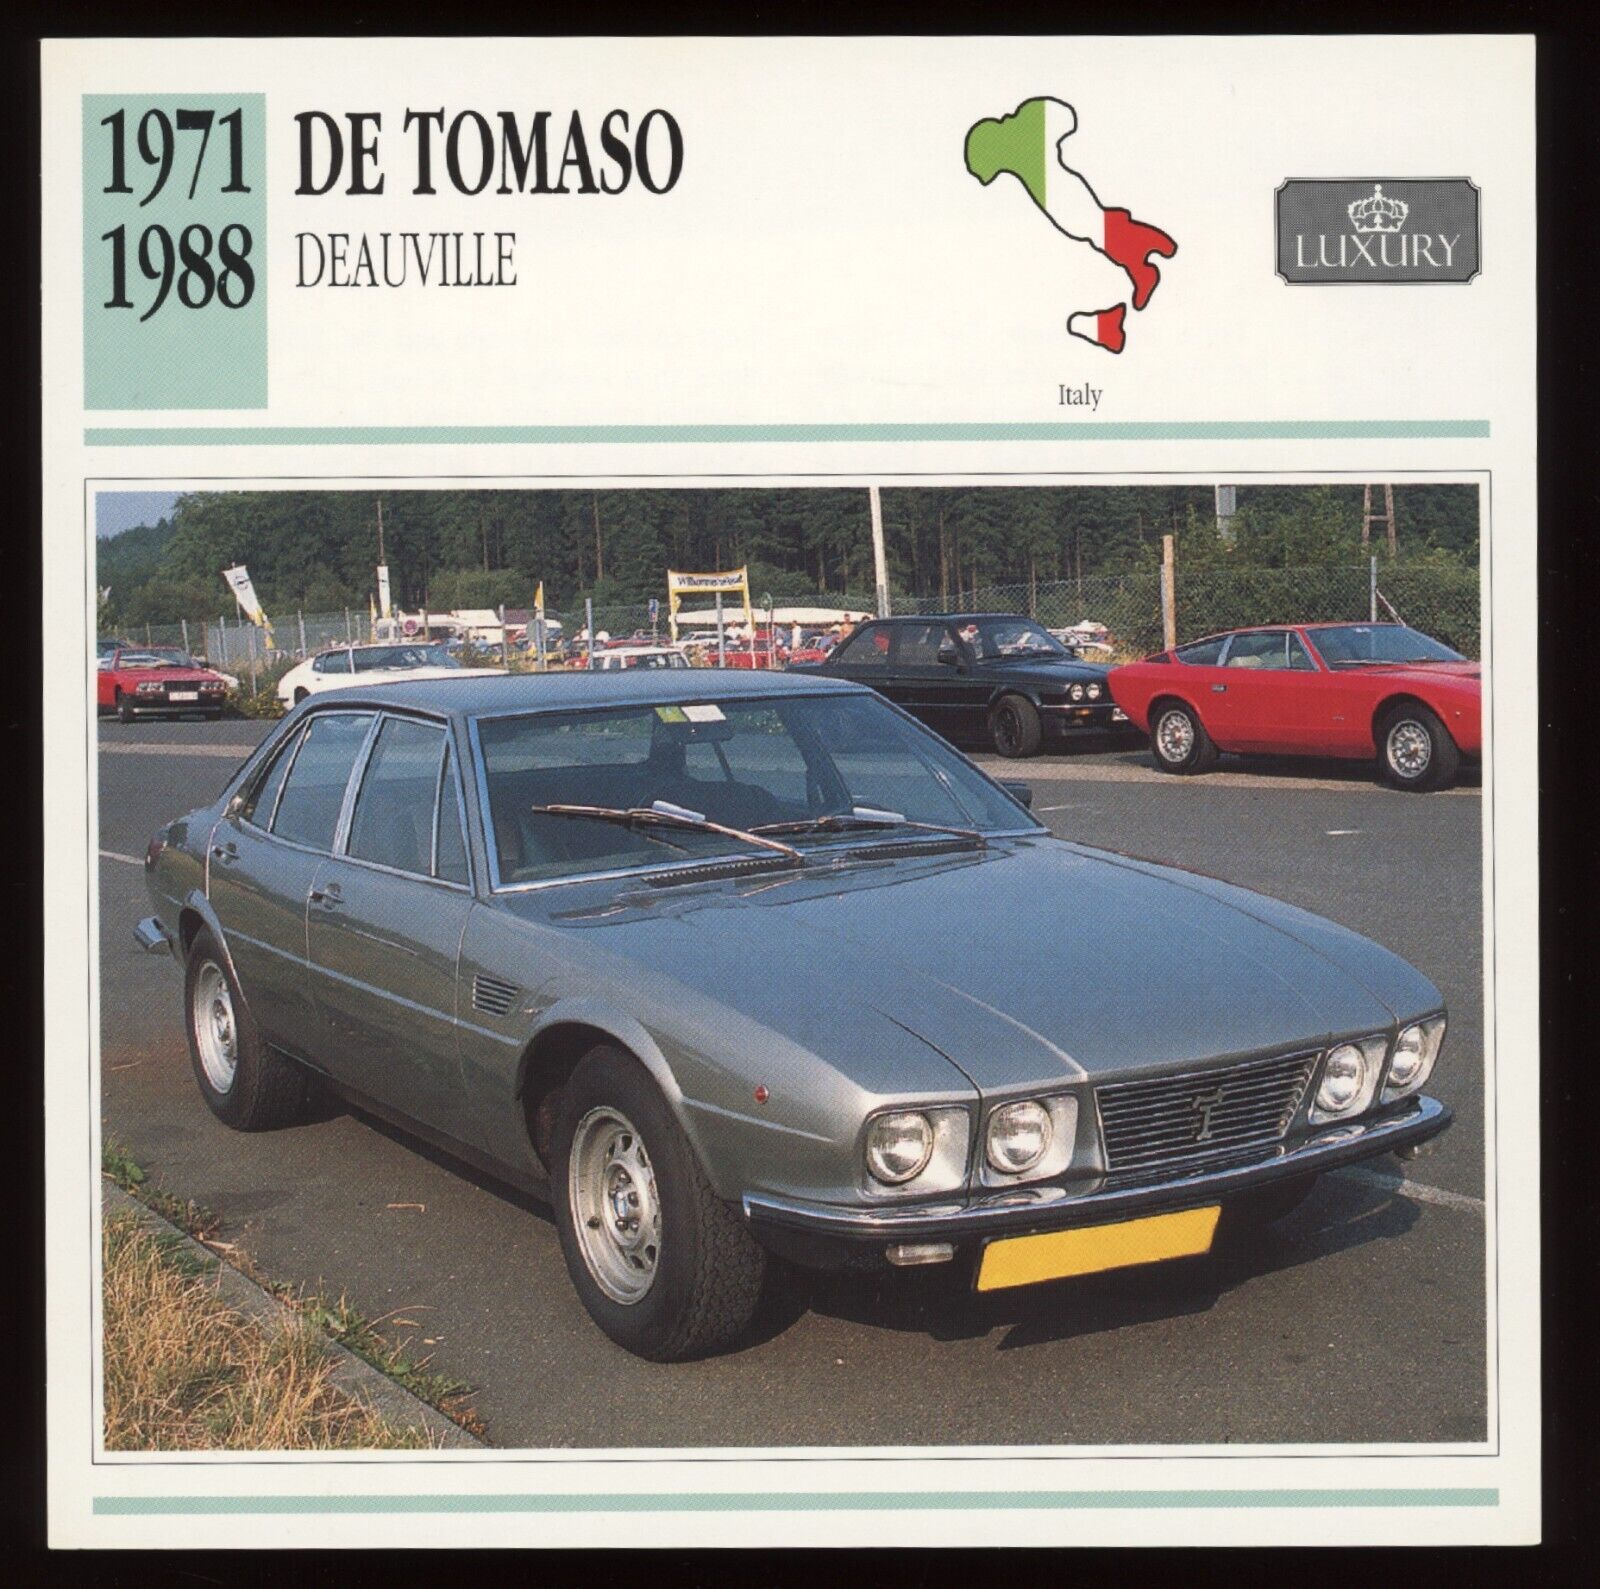 1971 - 1988  De Tomaso  Deauville  Classic Cars Card